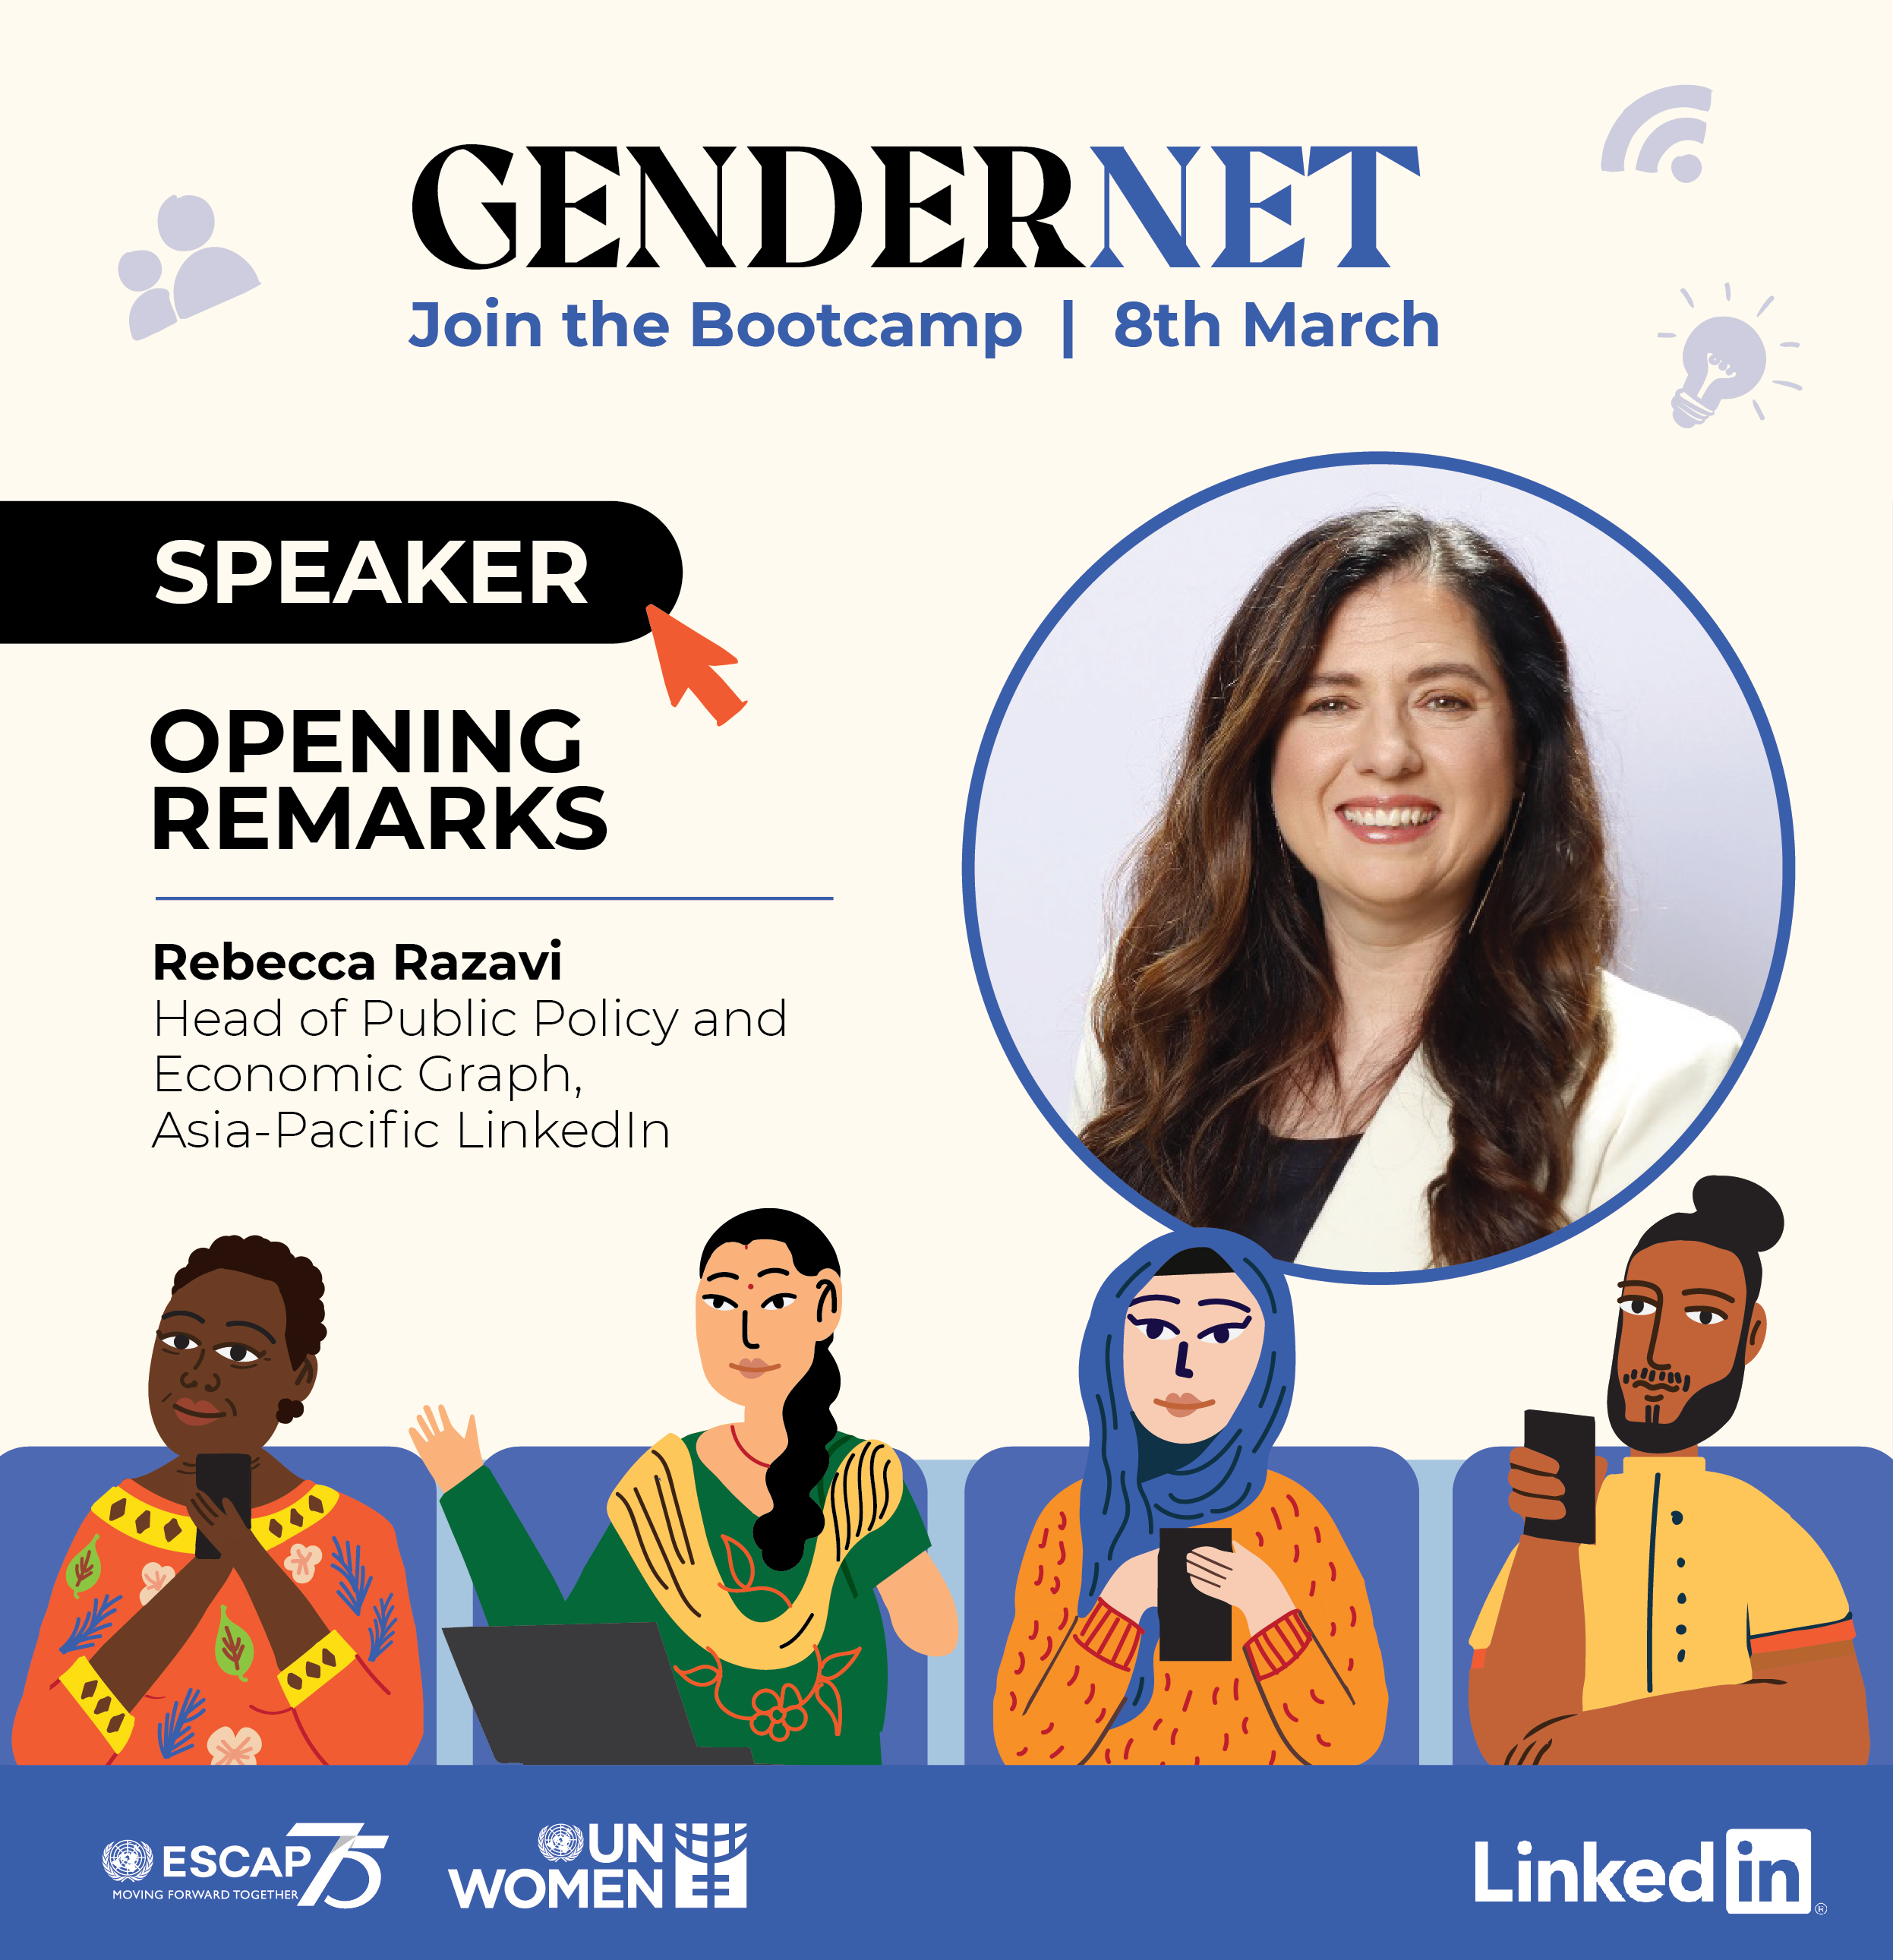 Rebecca Razavi, Head of Public Policy and Economic Graph, Asia-Pacific LinkedIn